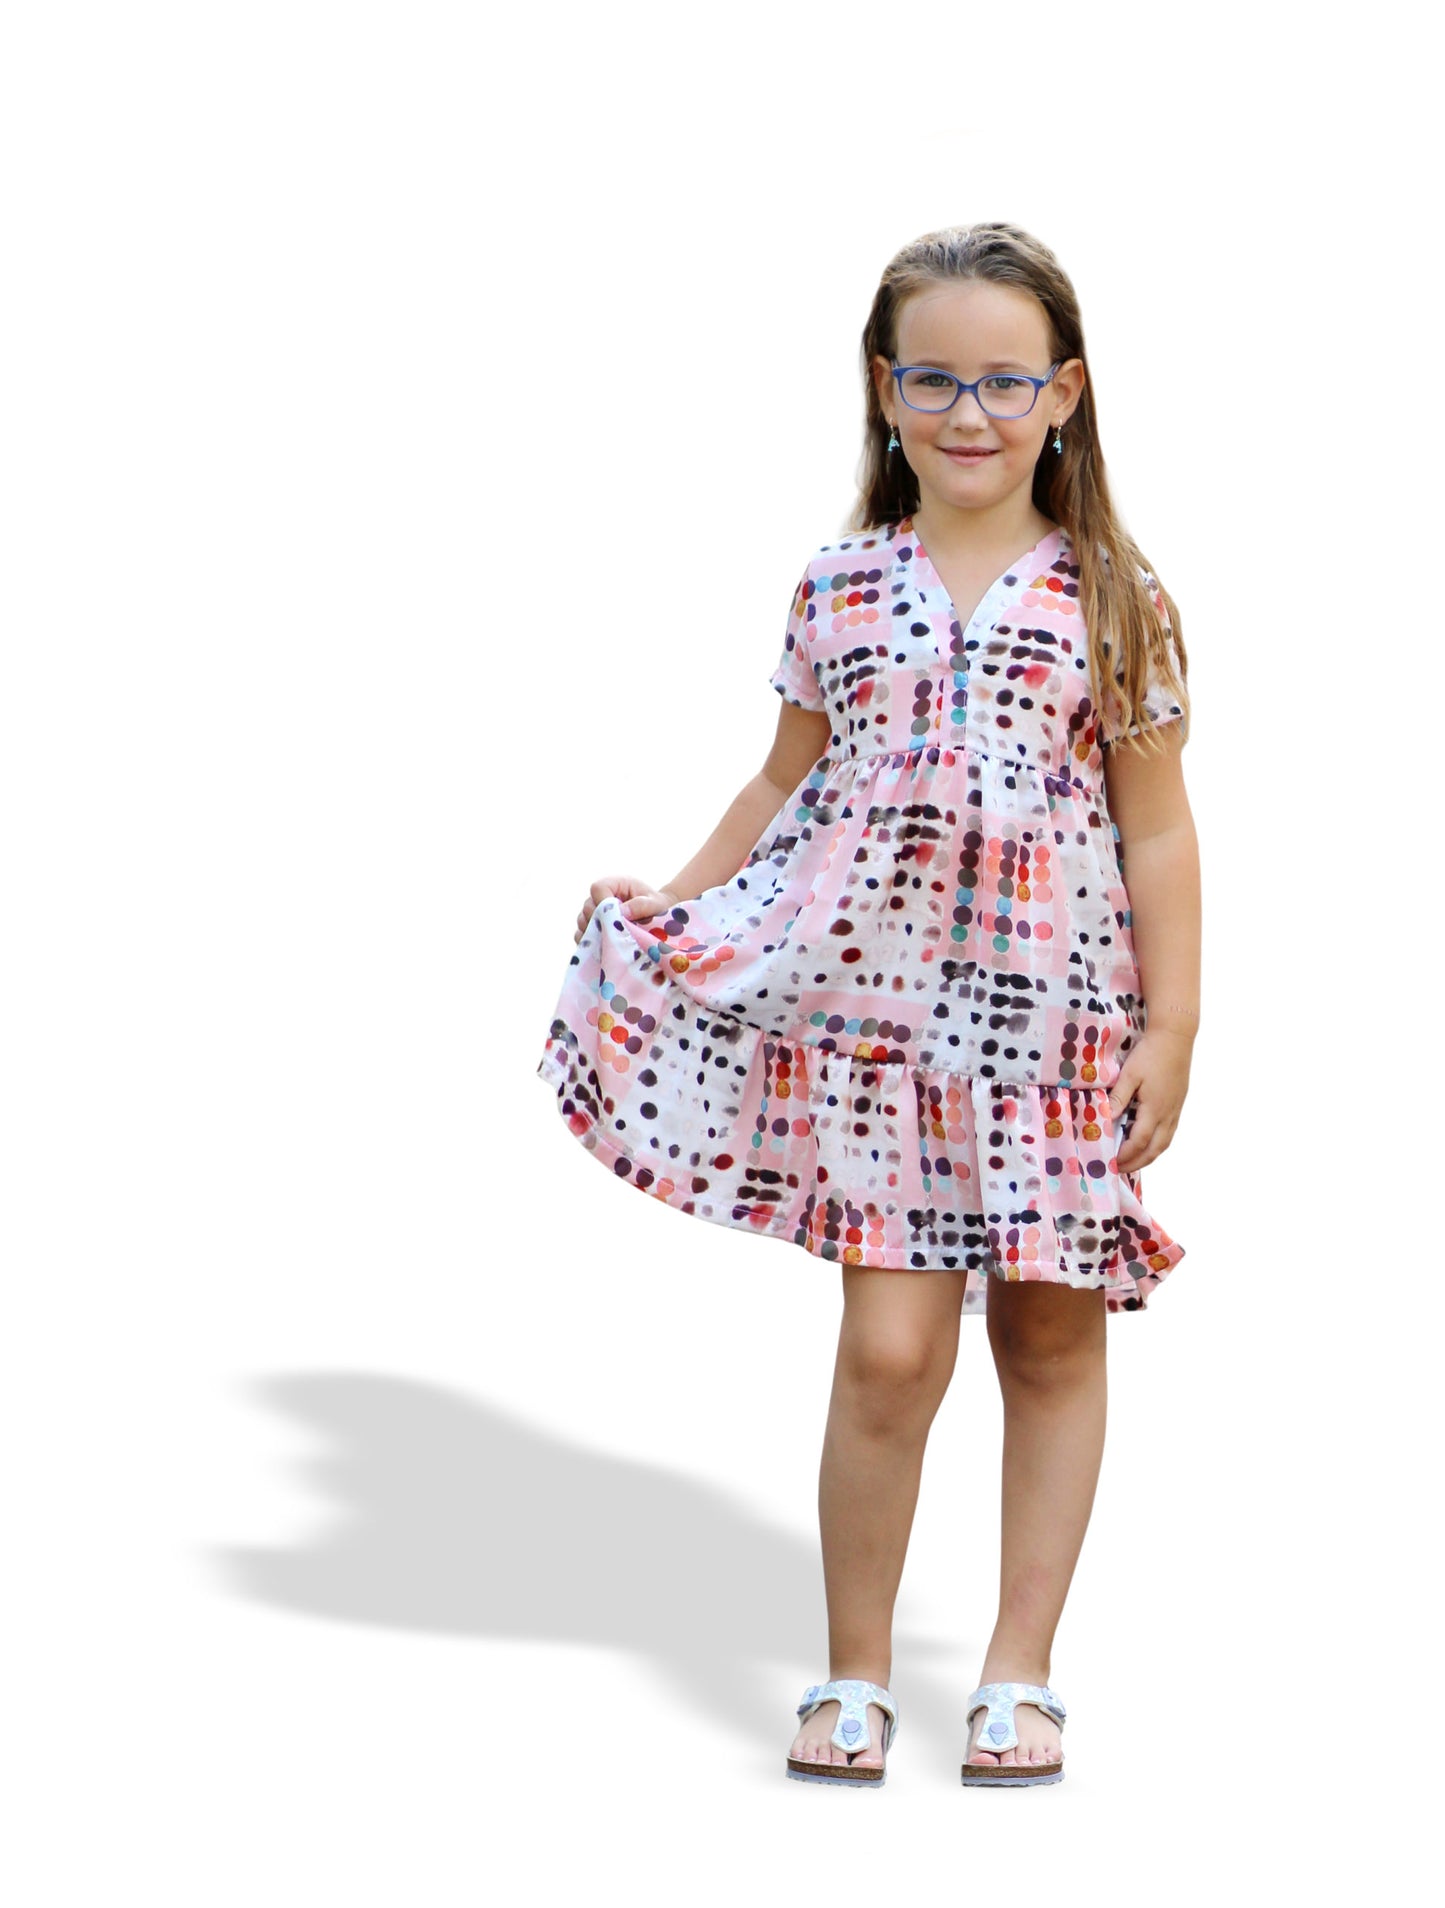 Kleid "Valentina" für Kinder von Fadenkäfer